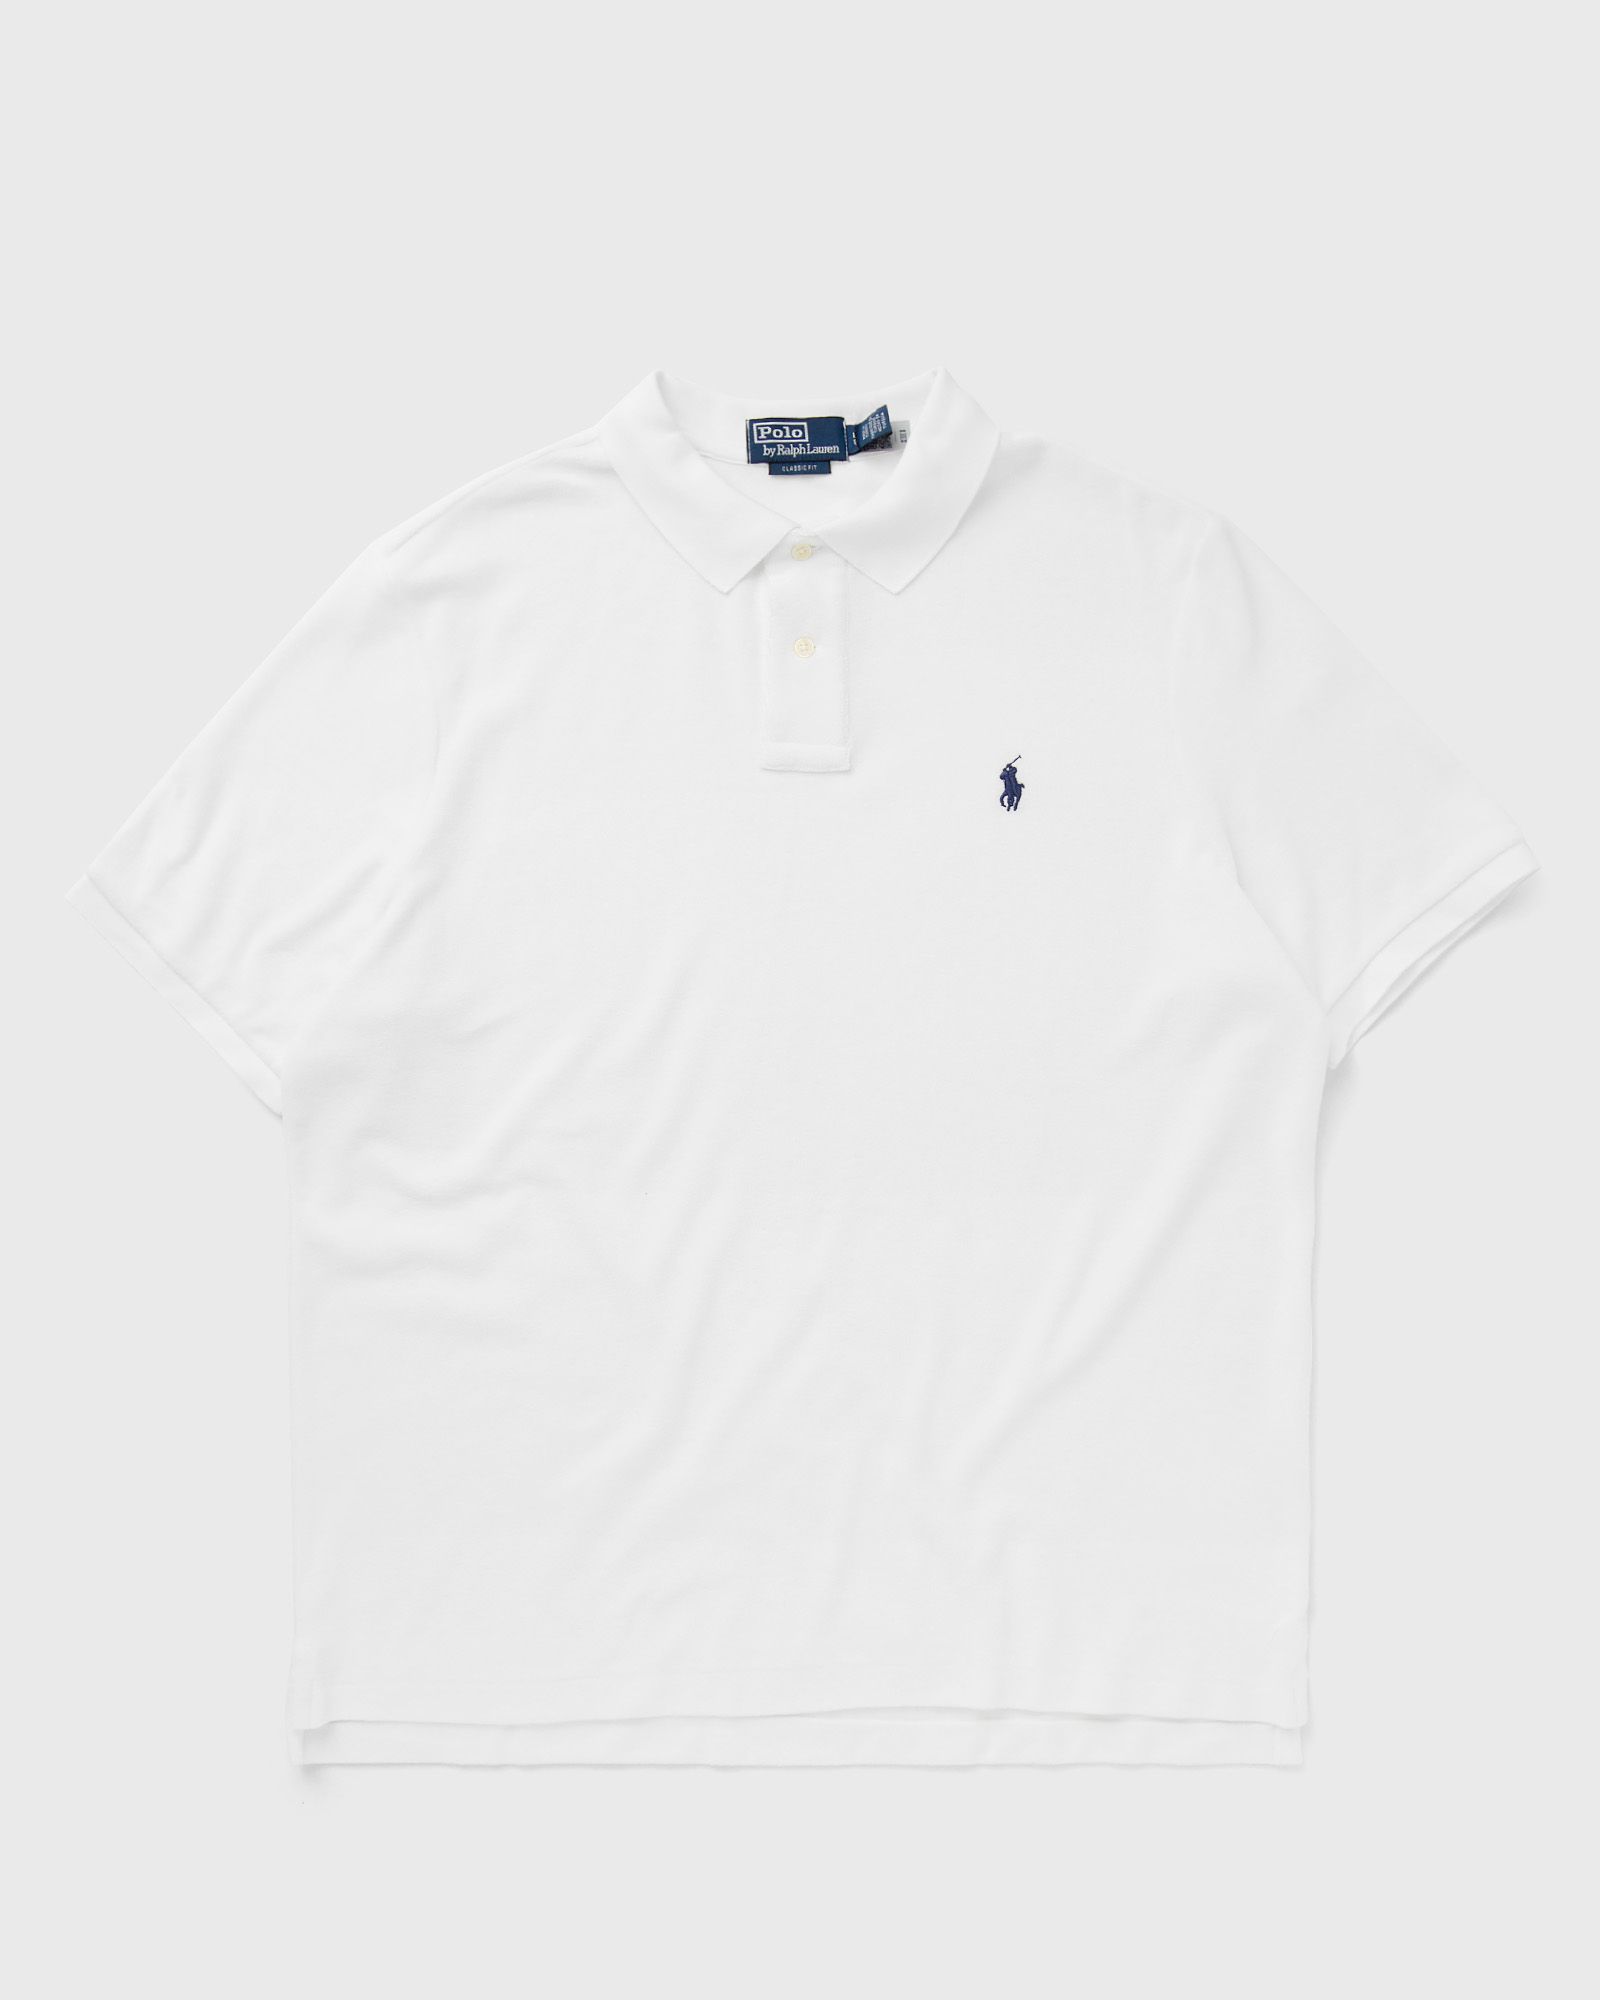 Polo Ralph Lauren - short sleeve-polo shirt men polos white in größe:xl